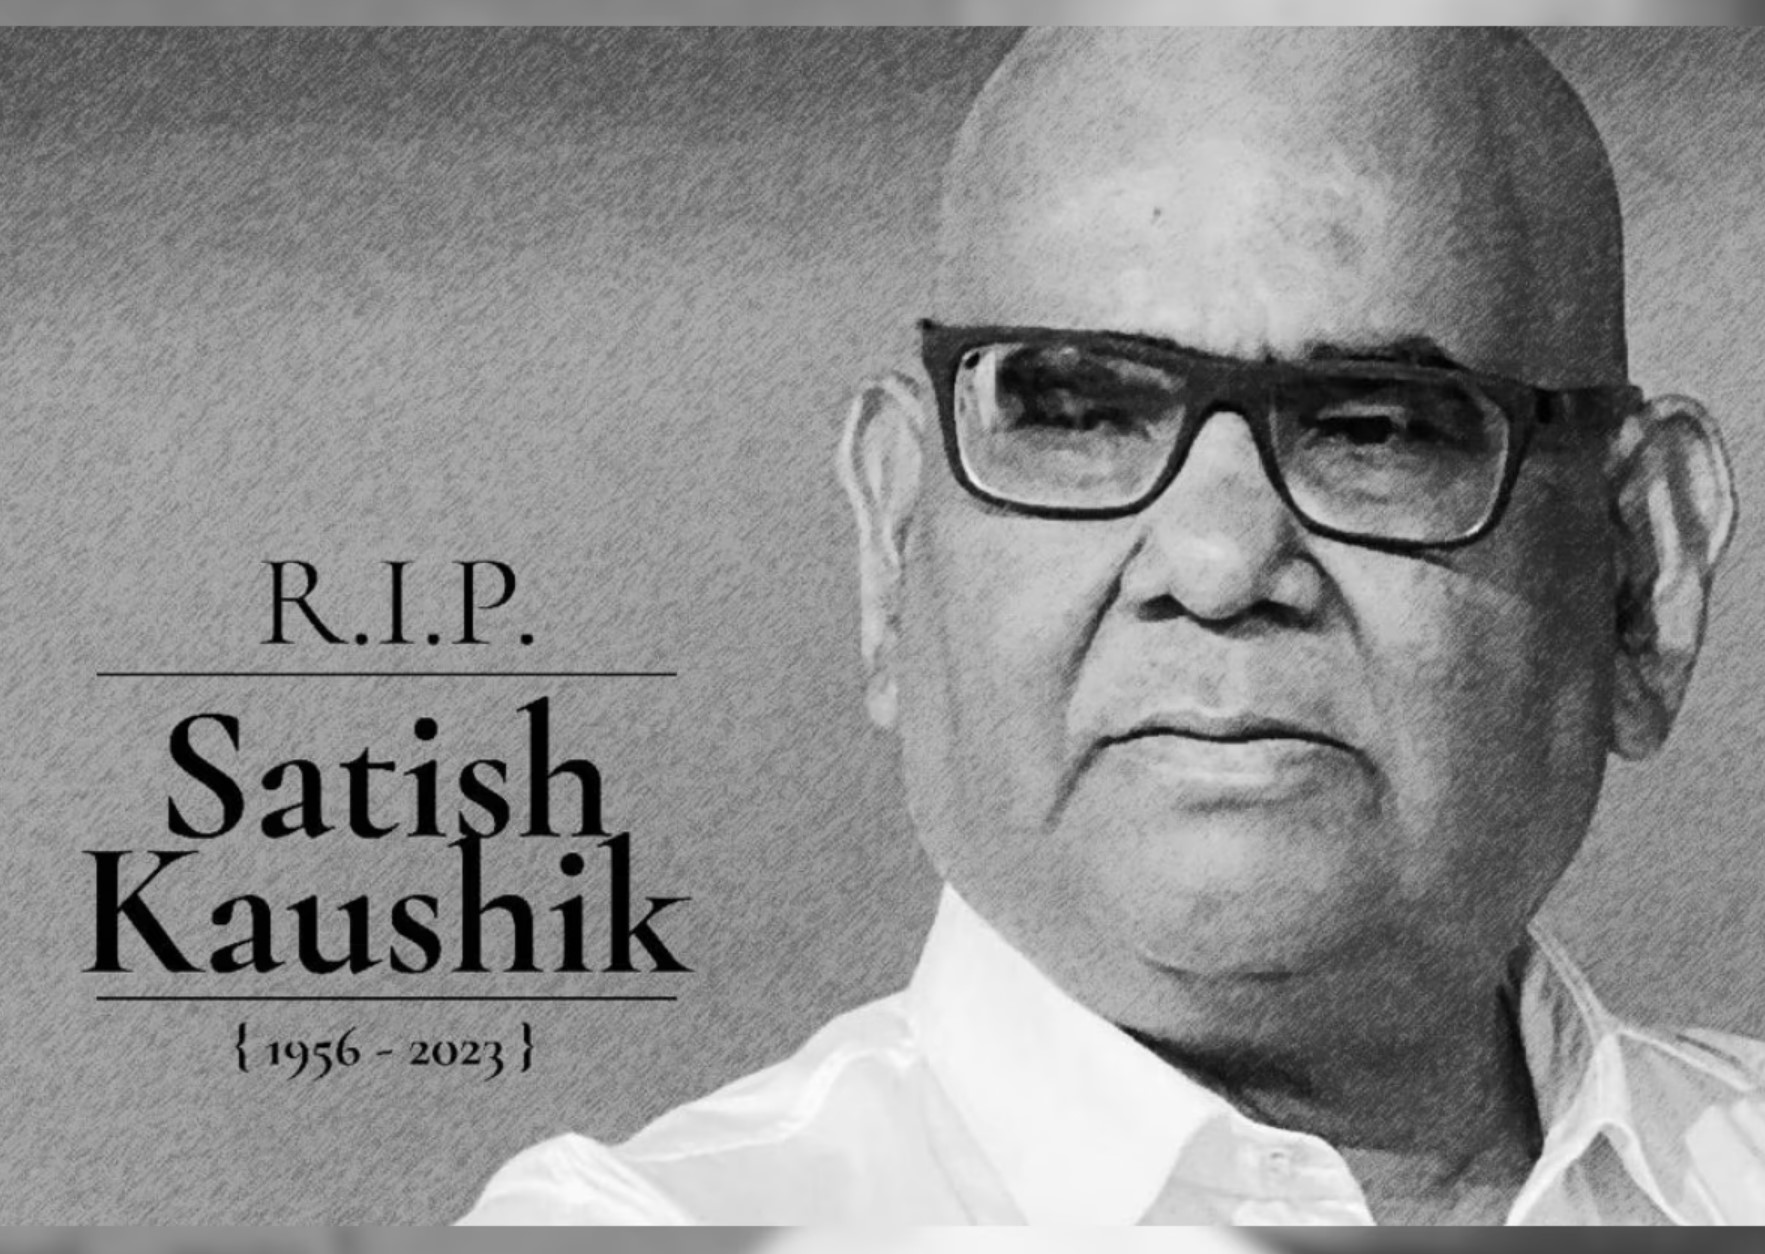 RIP SATISH KAUSHIK